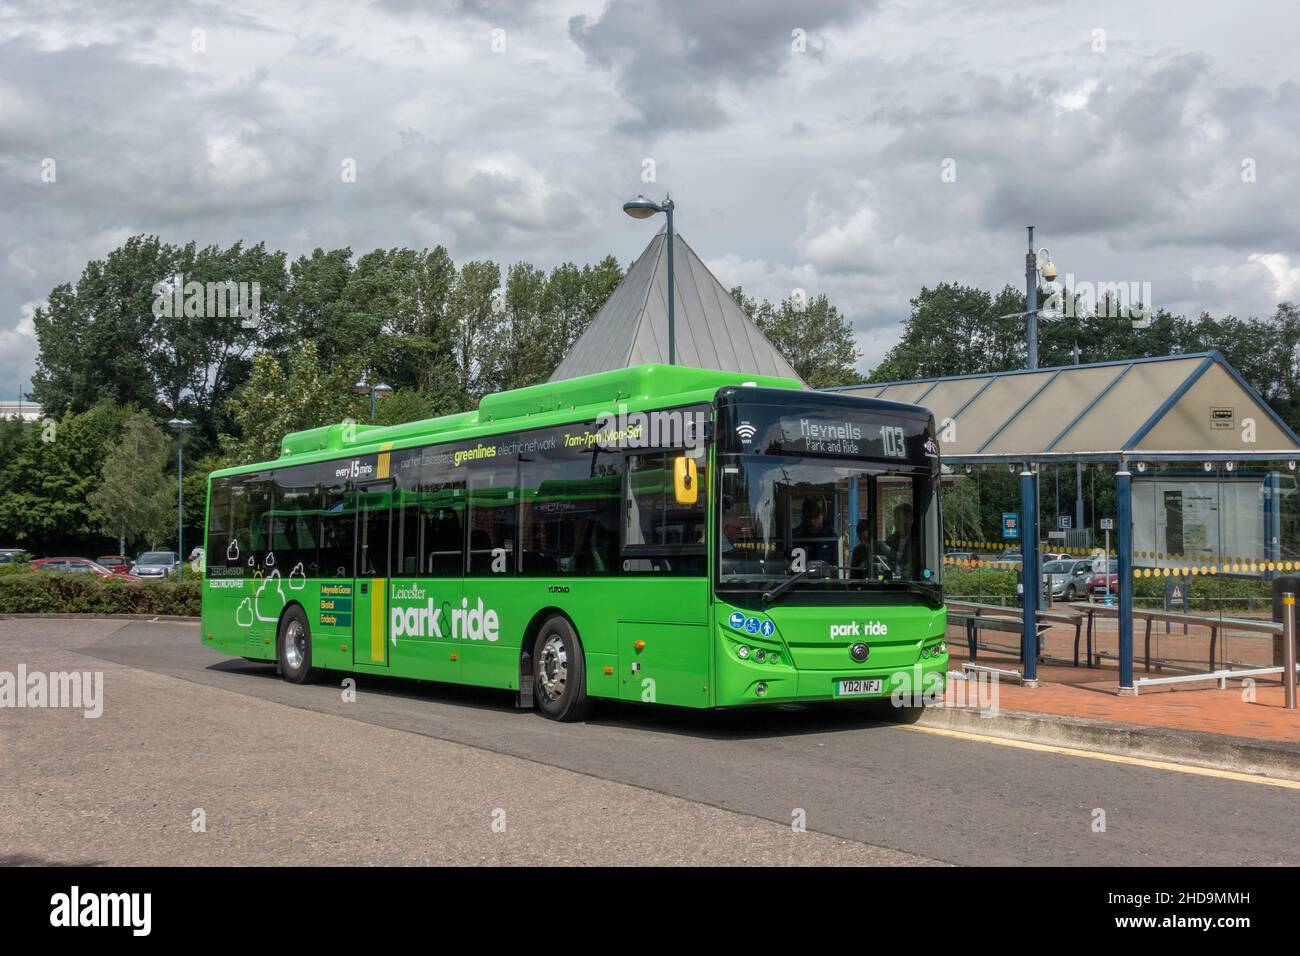 Ein Leicester Park & Ride-Bus (Greenline Electric Bus Project) an der Haltestelle Gorse Park & Ride von Meynell, Leicestershire, Großbritannien. Stockfoto